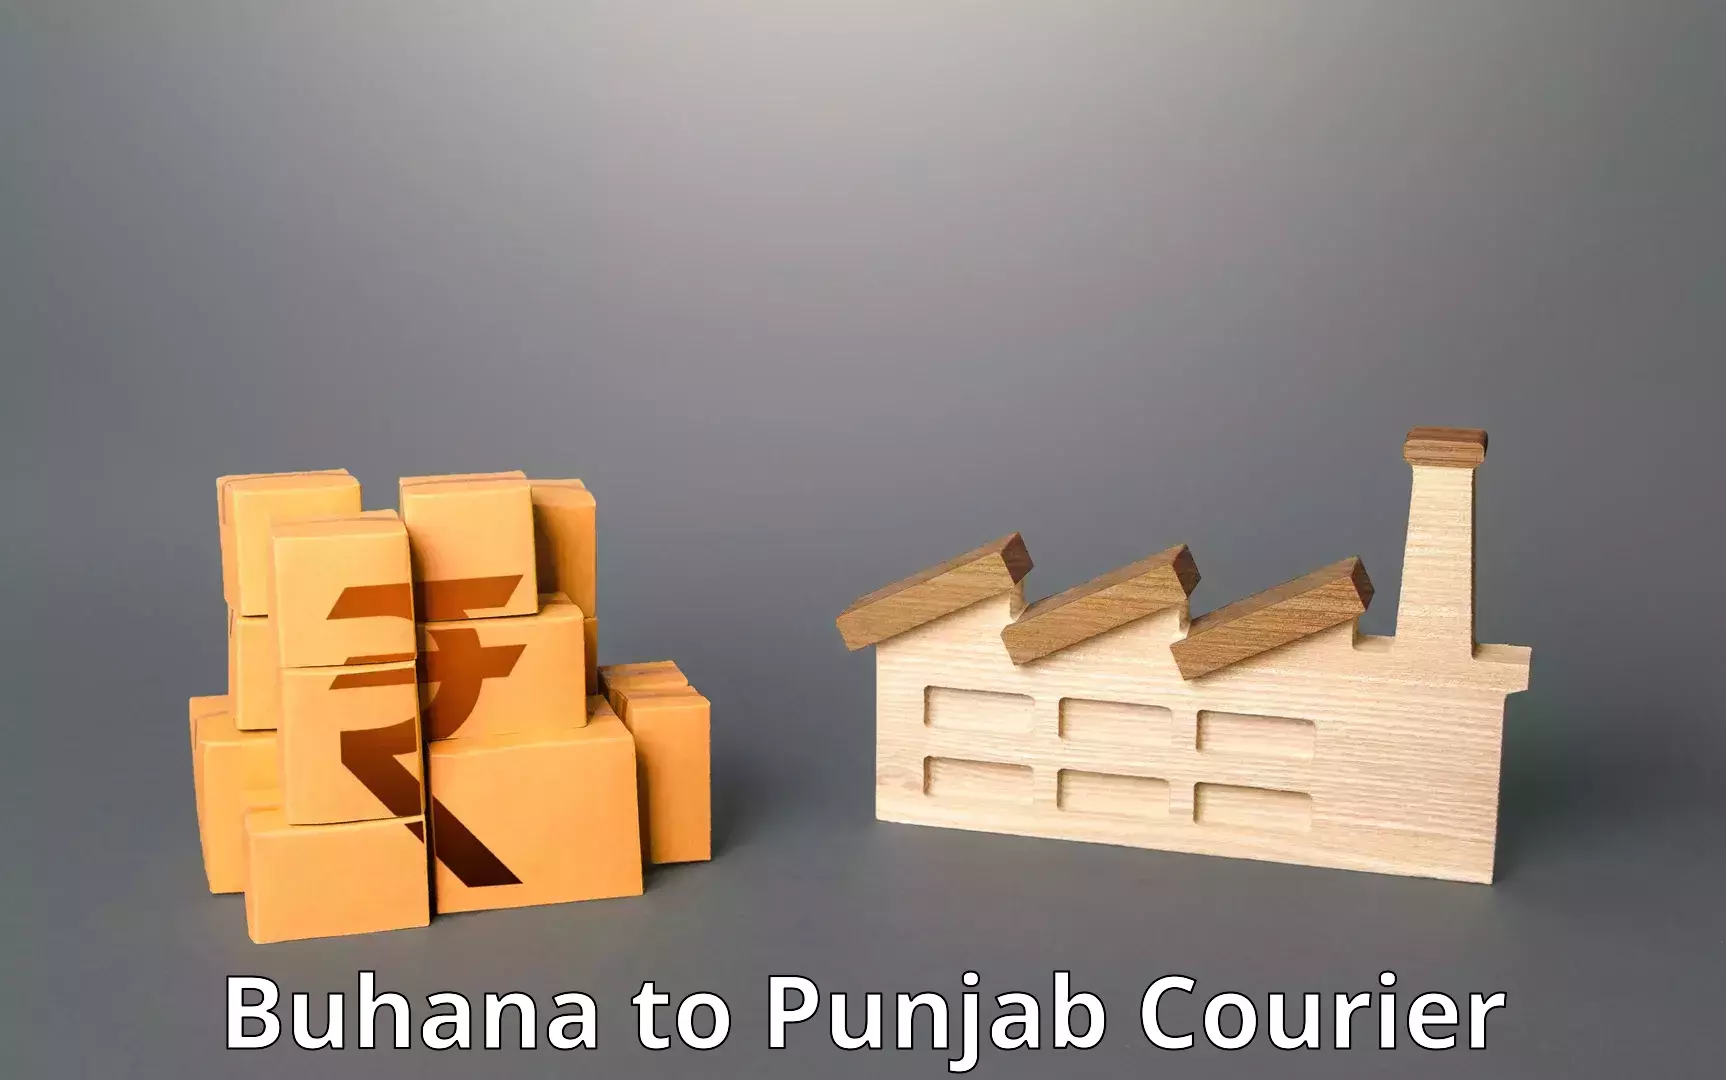 Express courier facilities Buhana to Ludhiana